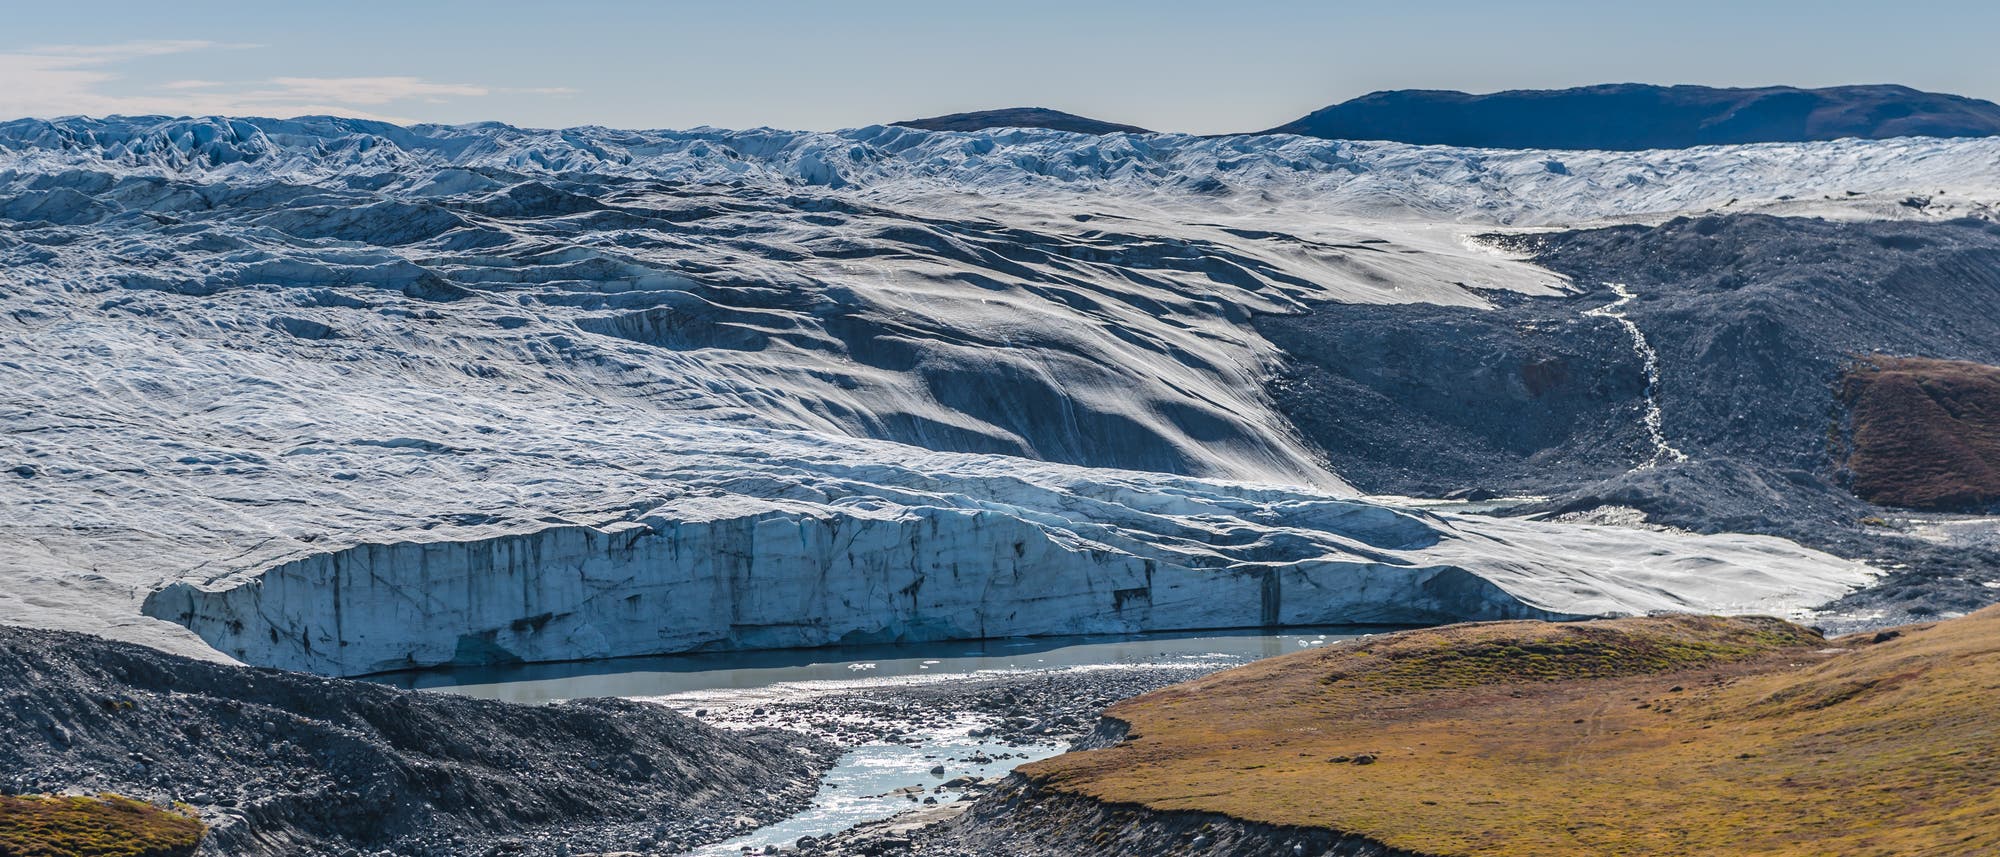 Eine Abbruchkante aus Eis am Rande der Tundra markiert den Rand des grönländischen Inlandeises.